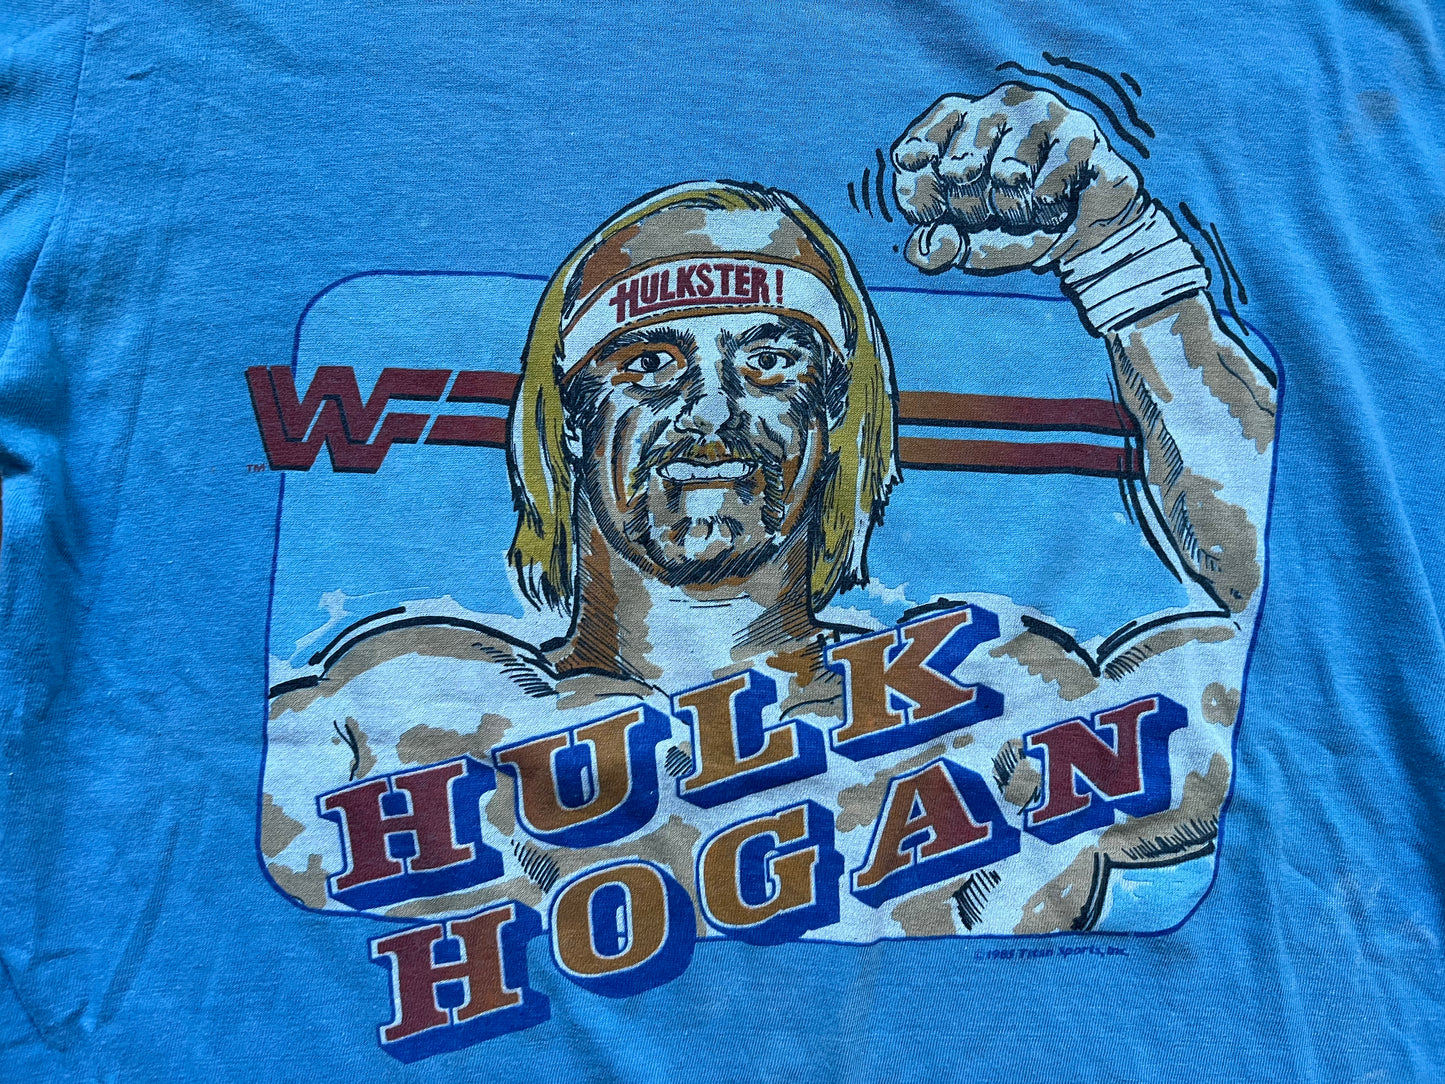 1985 WWF Hulk Hogan shirt in the rare blue